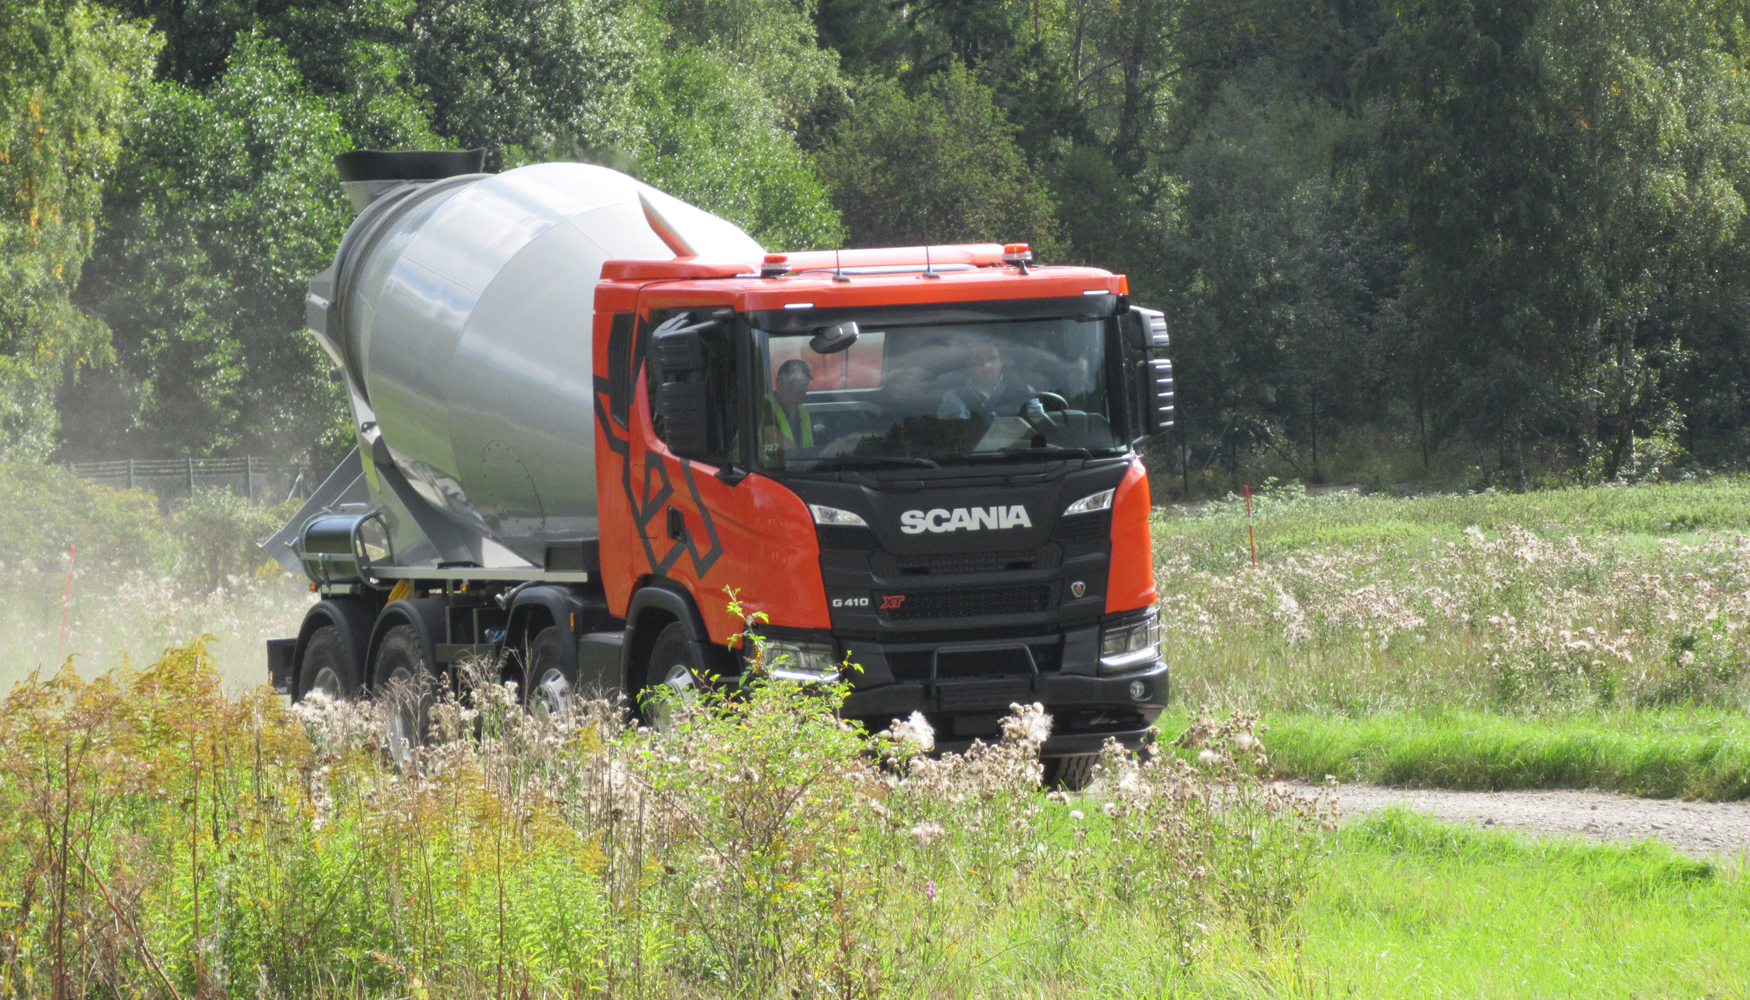 Scania figura entre los proveedores de soluciones de transporte lderes en todo el mundo. En 2016, entreg a sus clientes 73.100 camiones, 8...